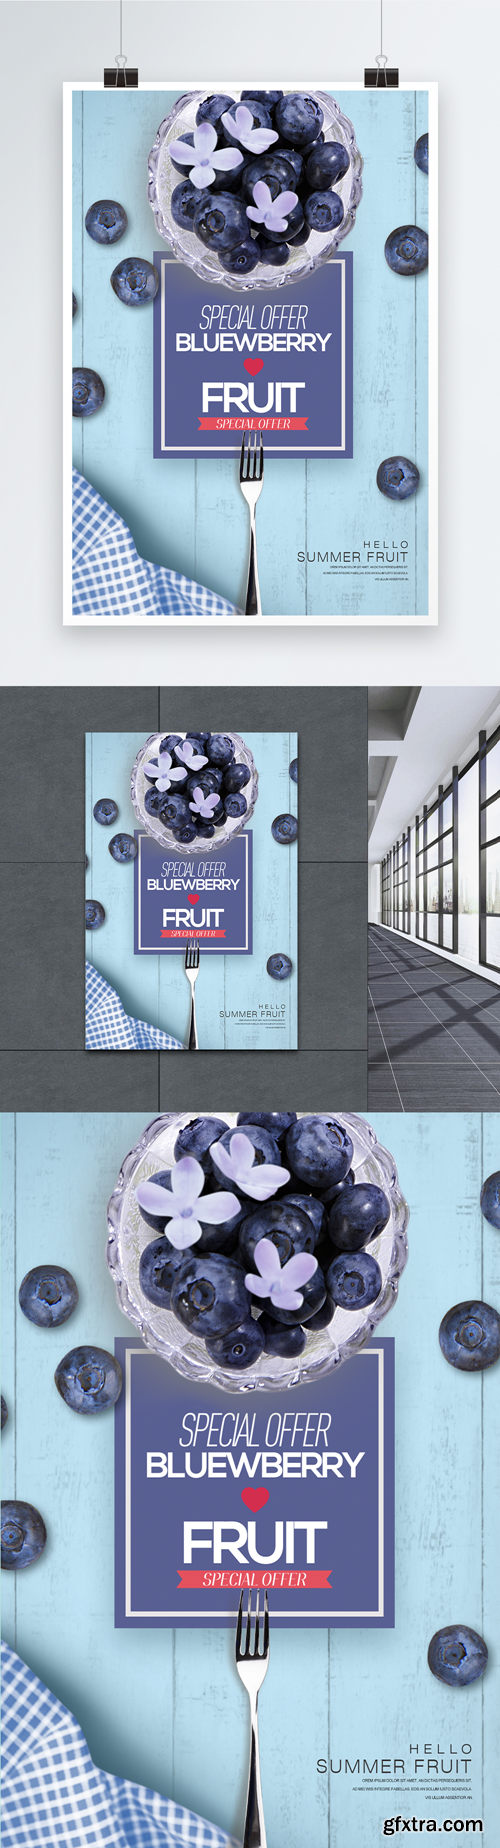 summer fresh blueberry fruit theme poster